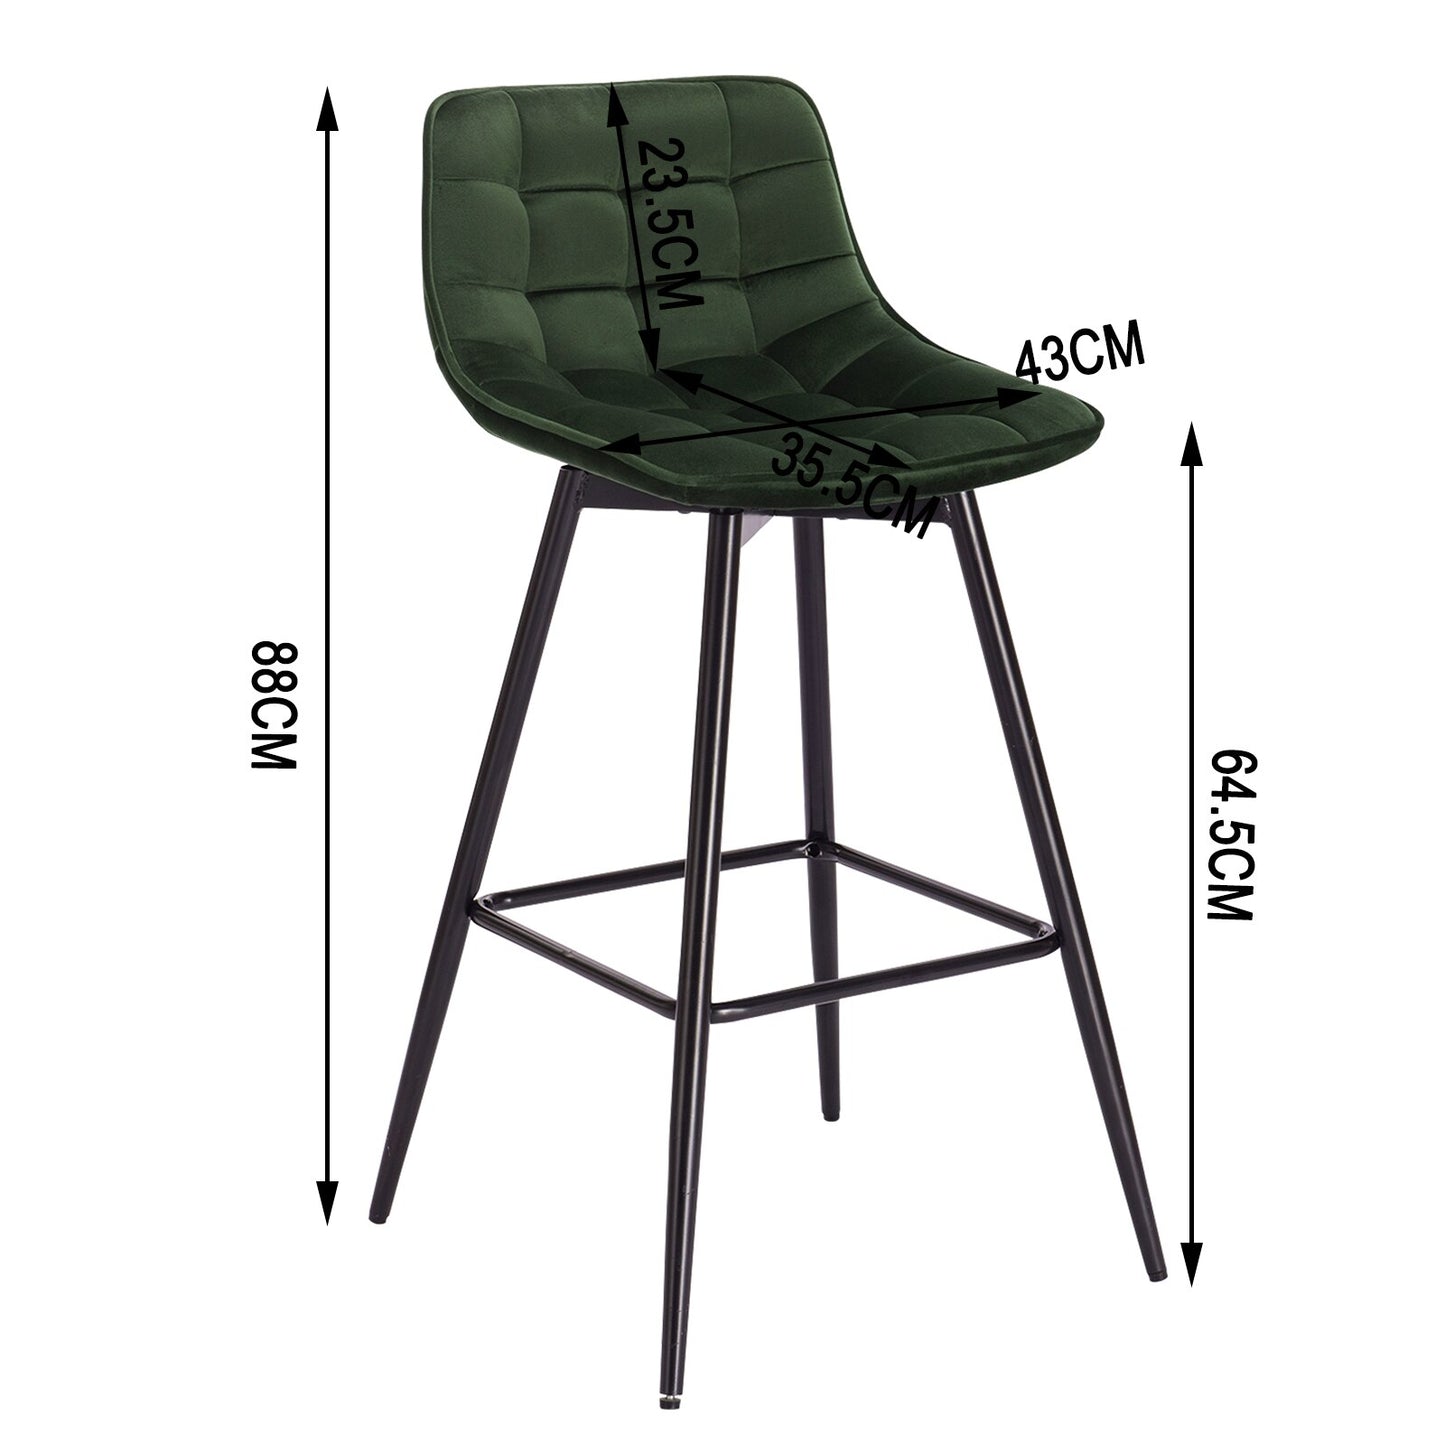 2 teiliges Designer Barhocker Set mit Leder/Velvet Sitz und Fußstütze aus Metallgestell für Zuhause und Bar Bistro - Unique Outlet